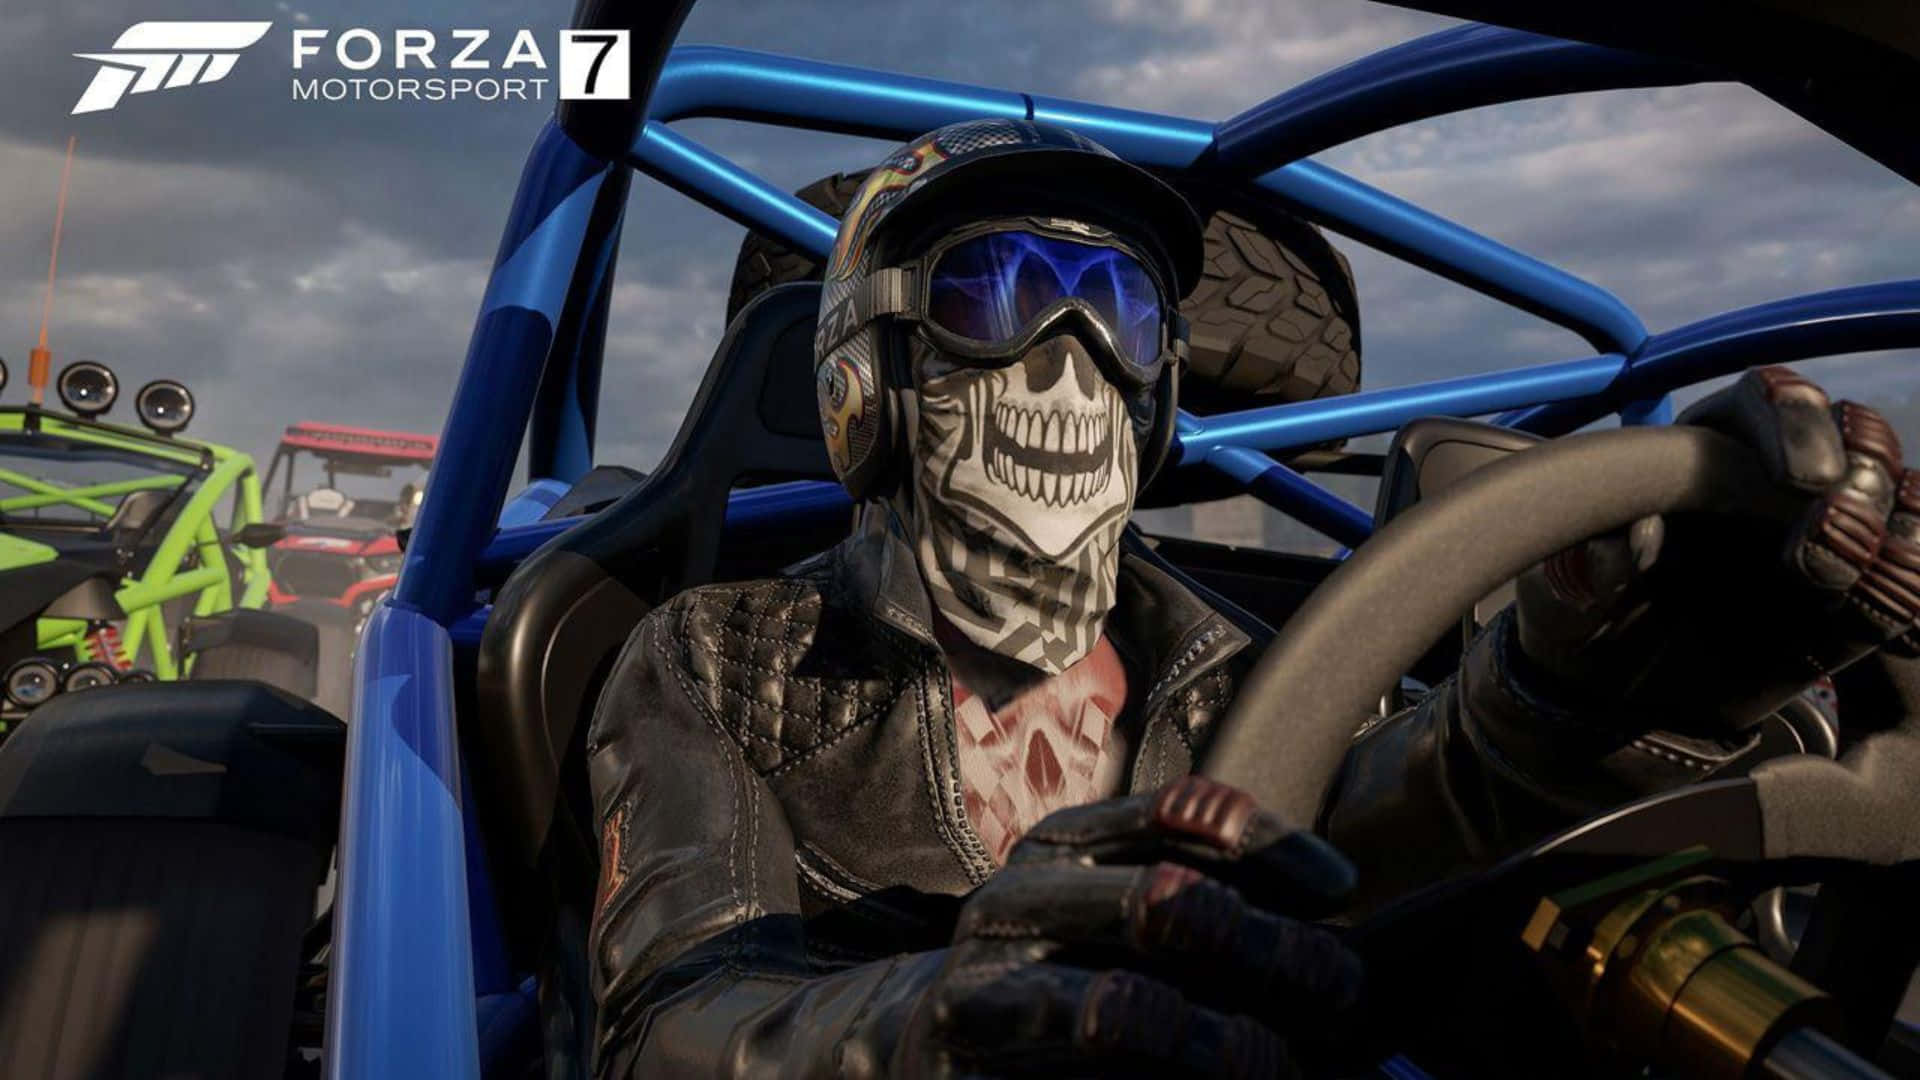 Hd Forza Motorsport 7 Background&Skeleton Mask